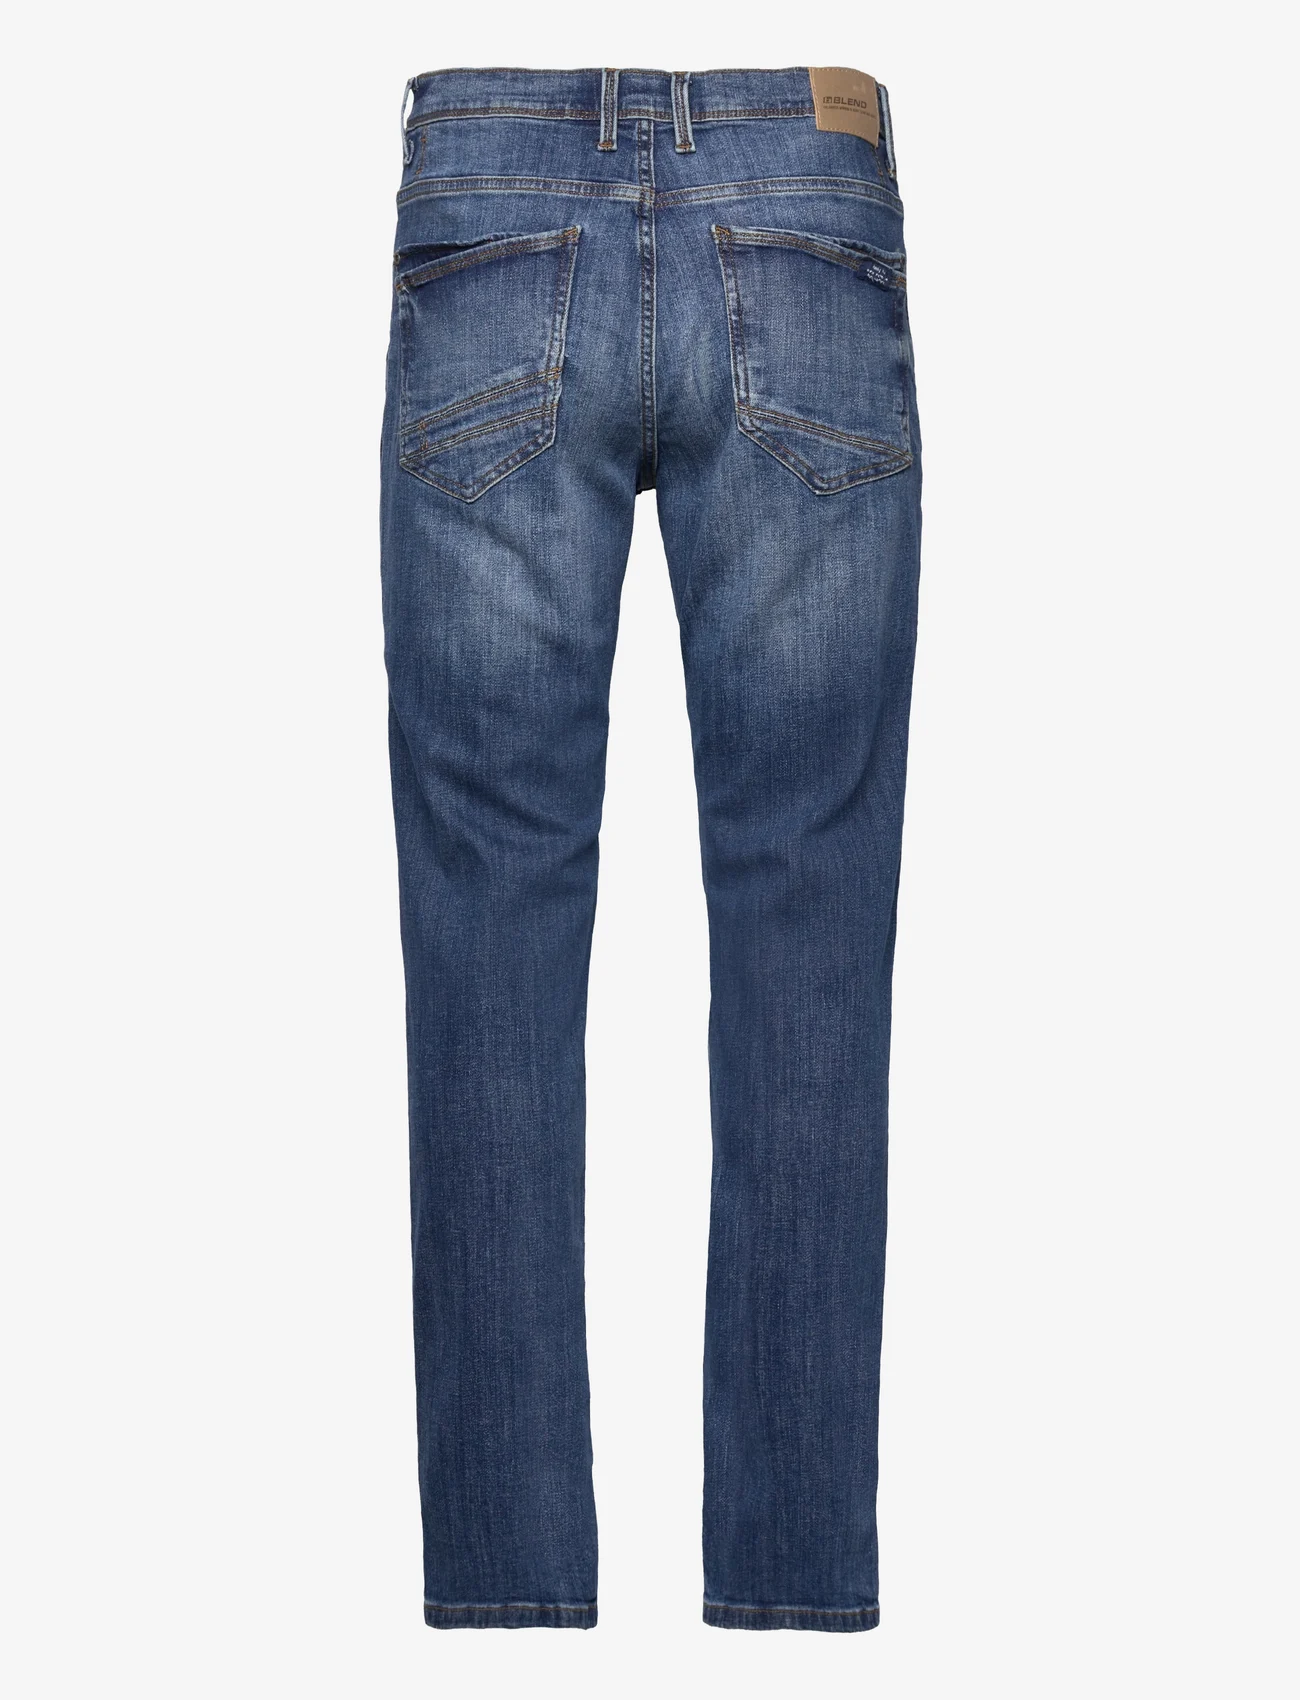 Blend - Rock fit - regular jeans - middle blue - 34 - 1